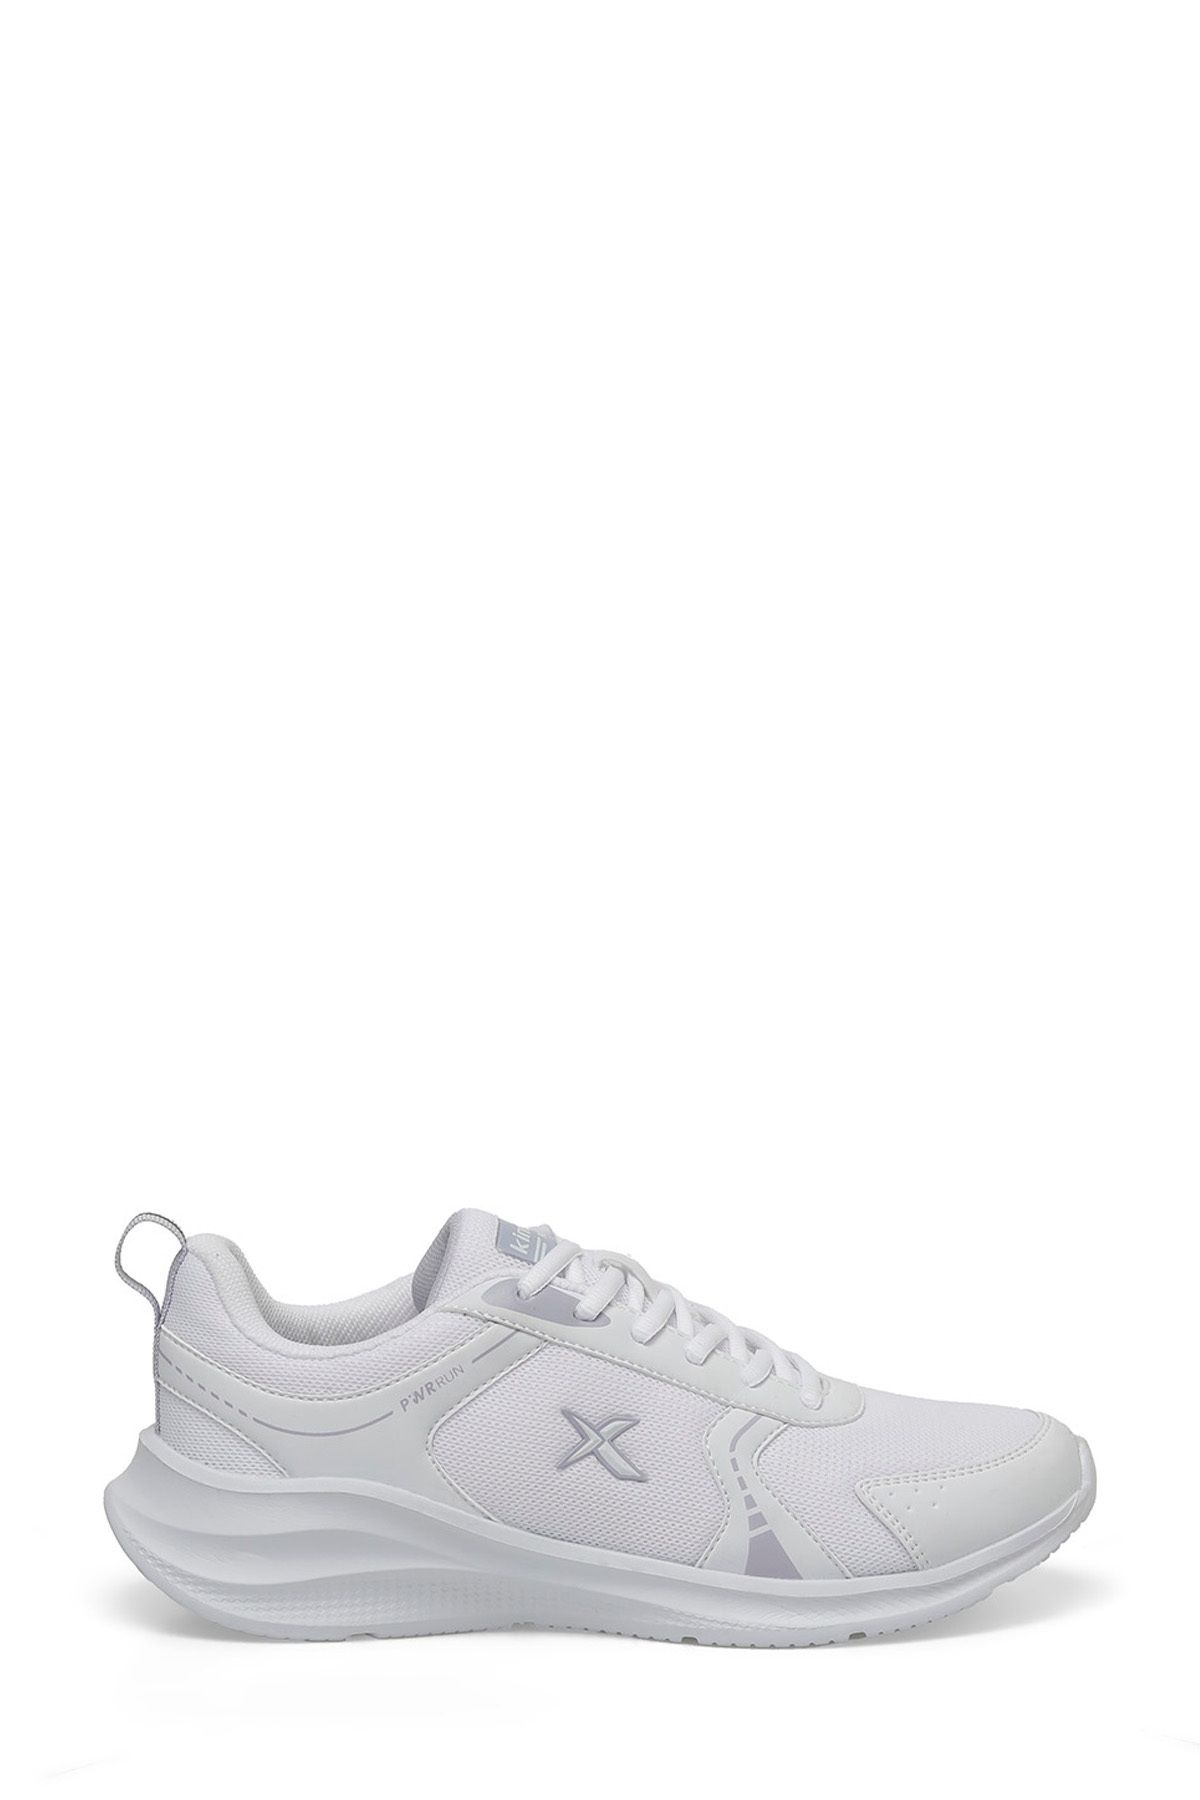 CHARLES TX W 4FX Beyaz Kadın Koşu Ayakkabısı